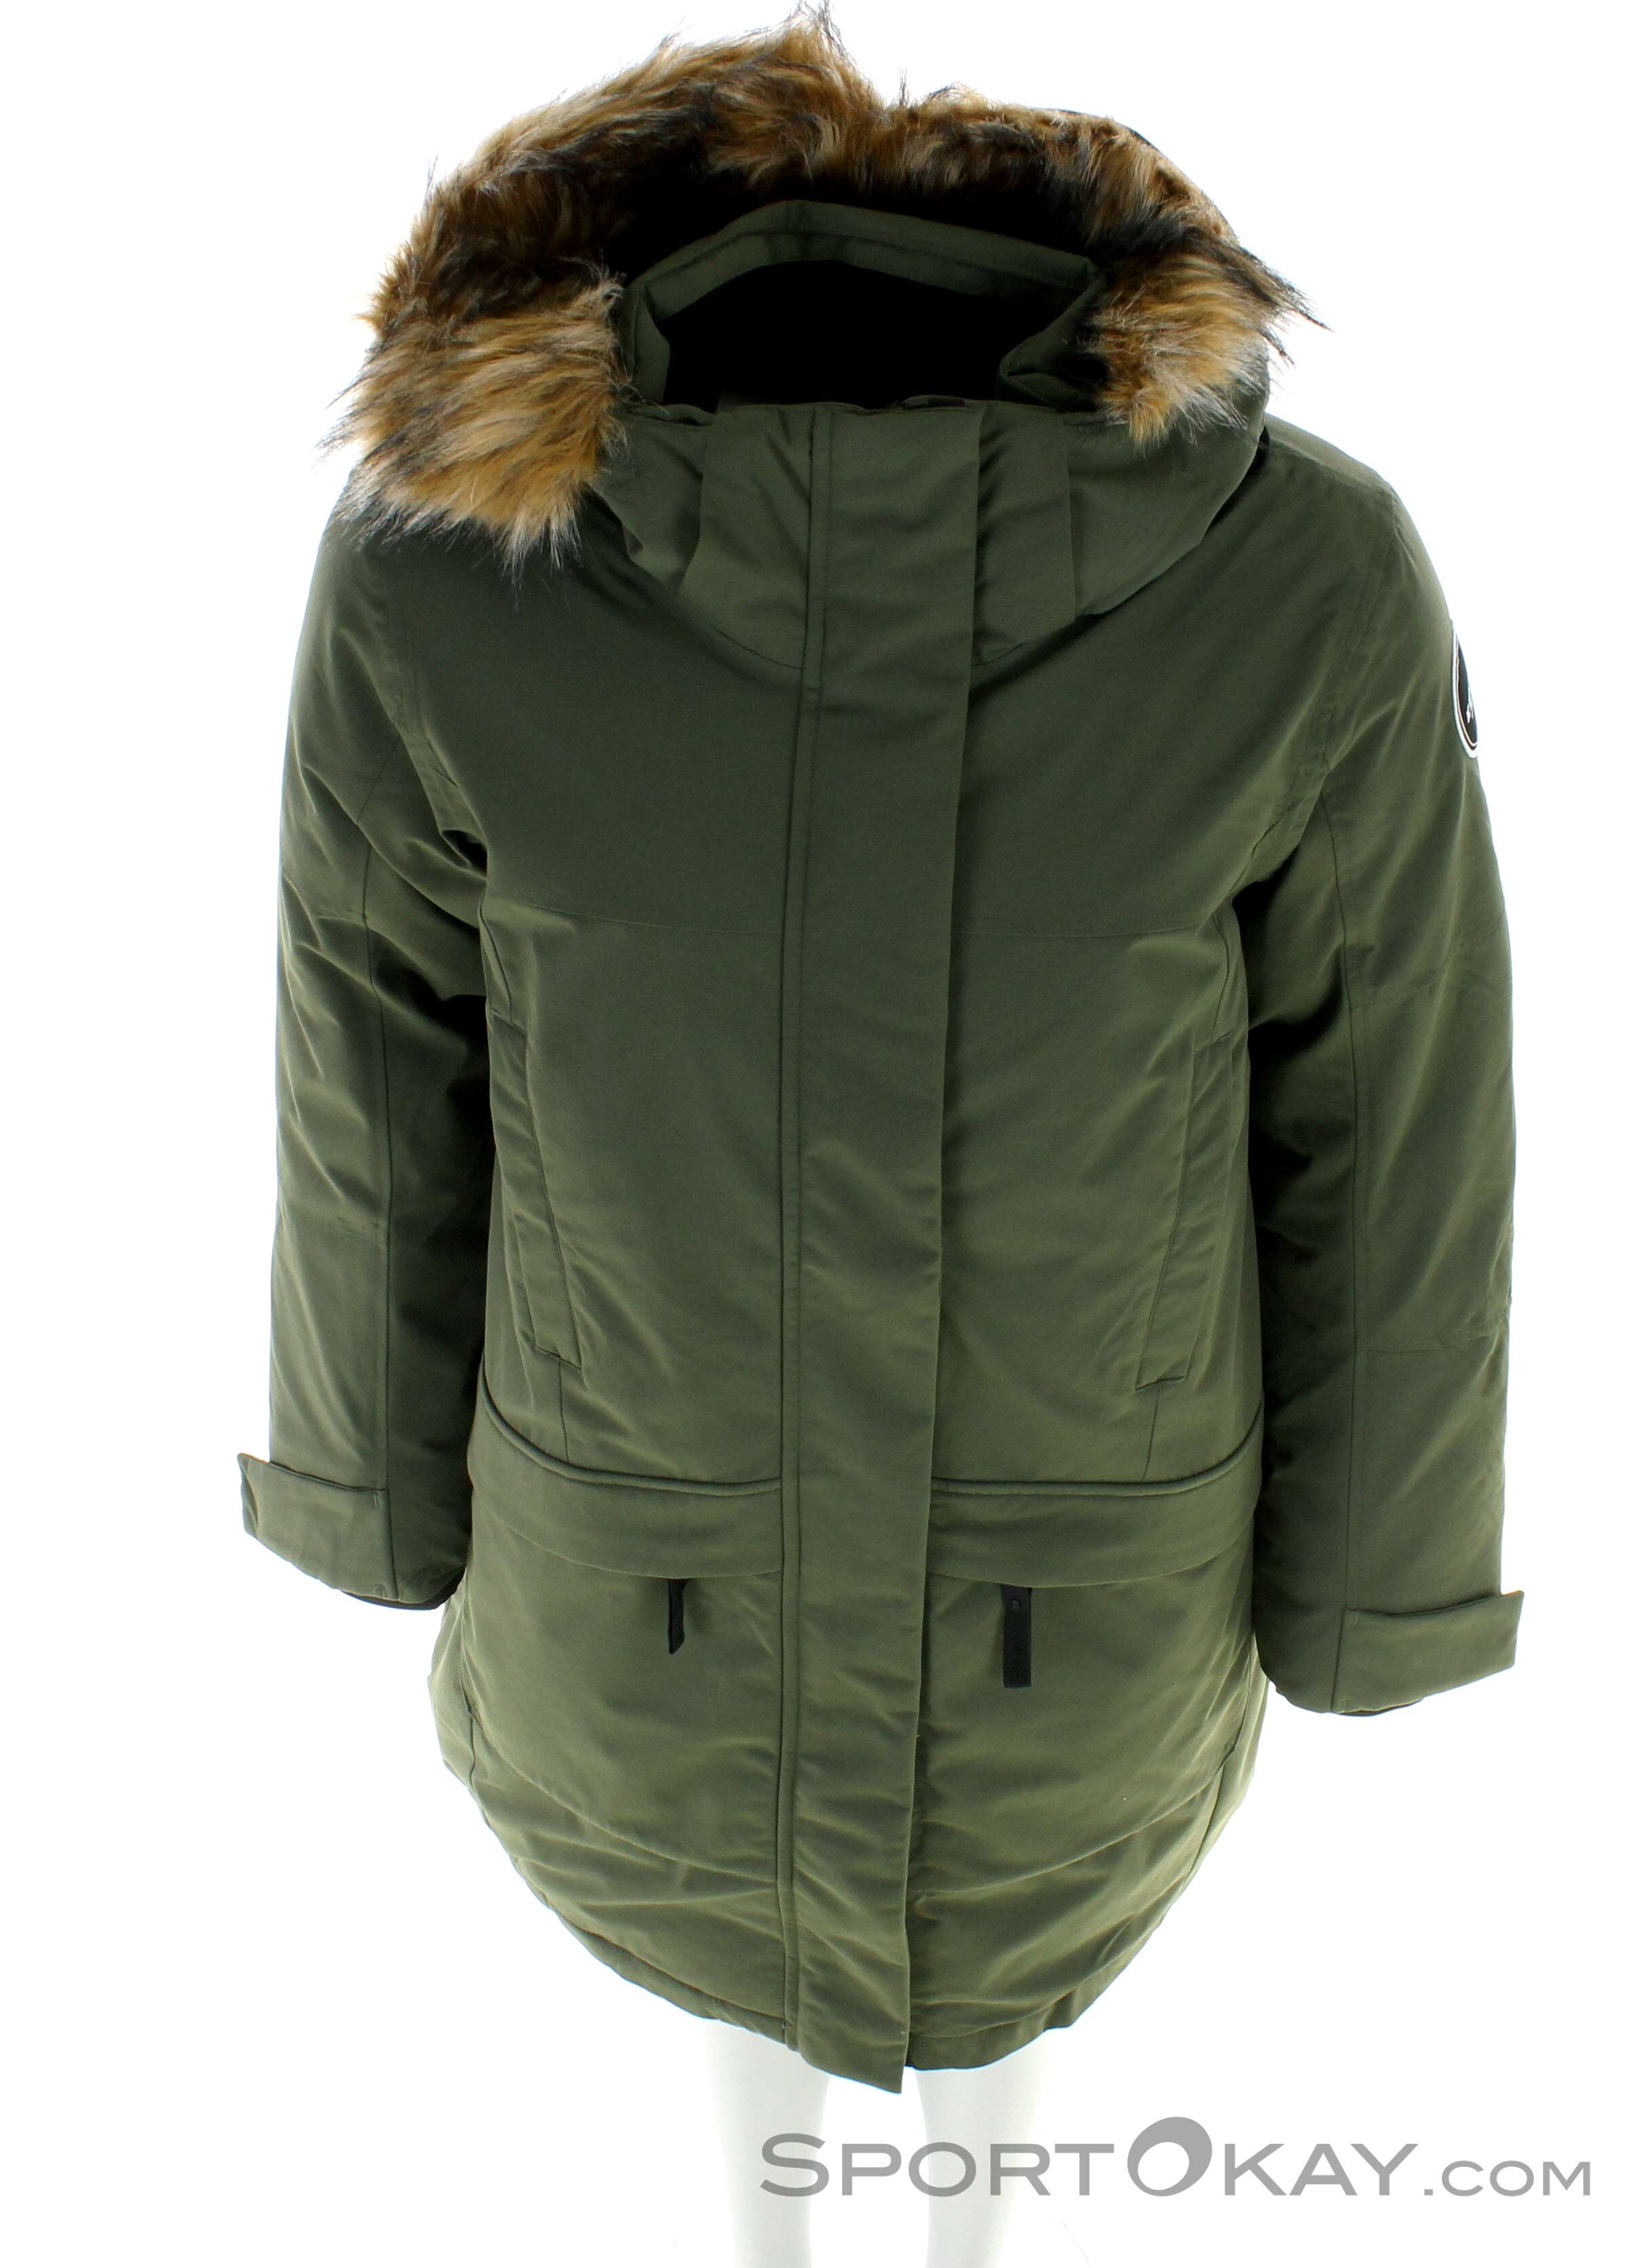 Jackets - - Coat Leisure Women Arneburg All Icepeak Fashion - - Clothing